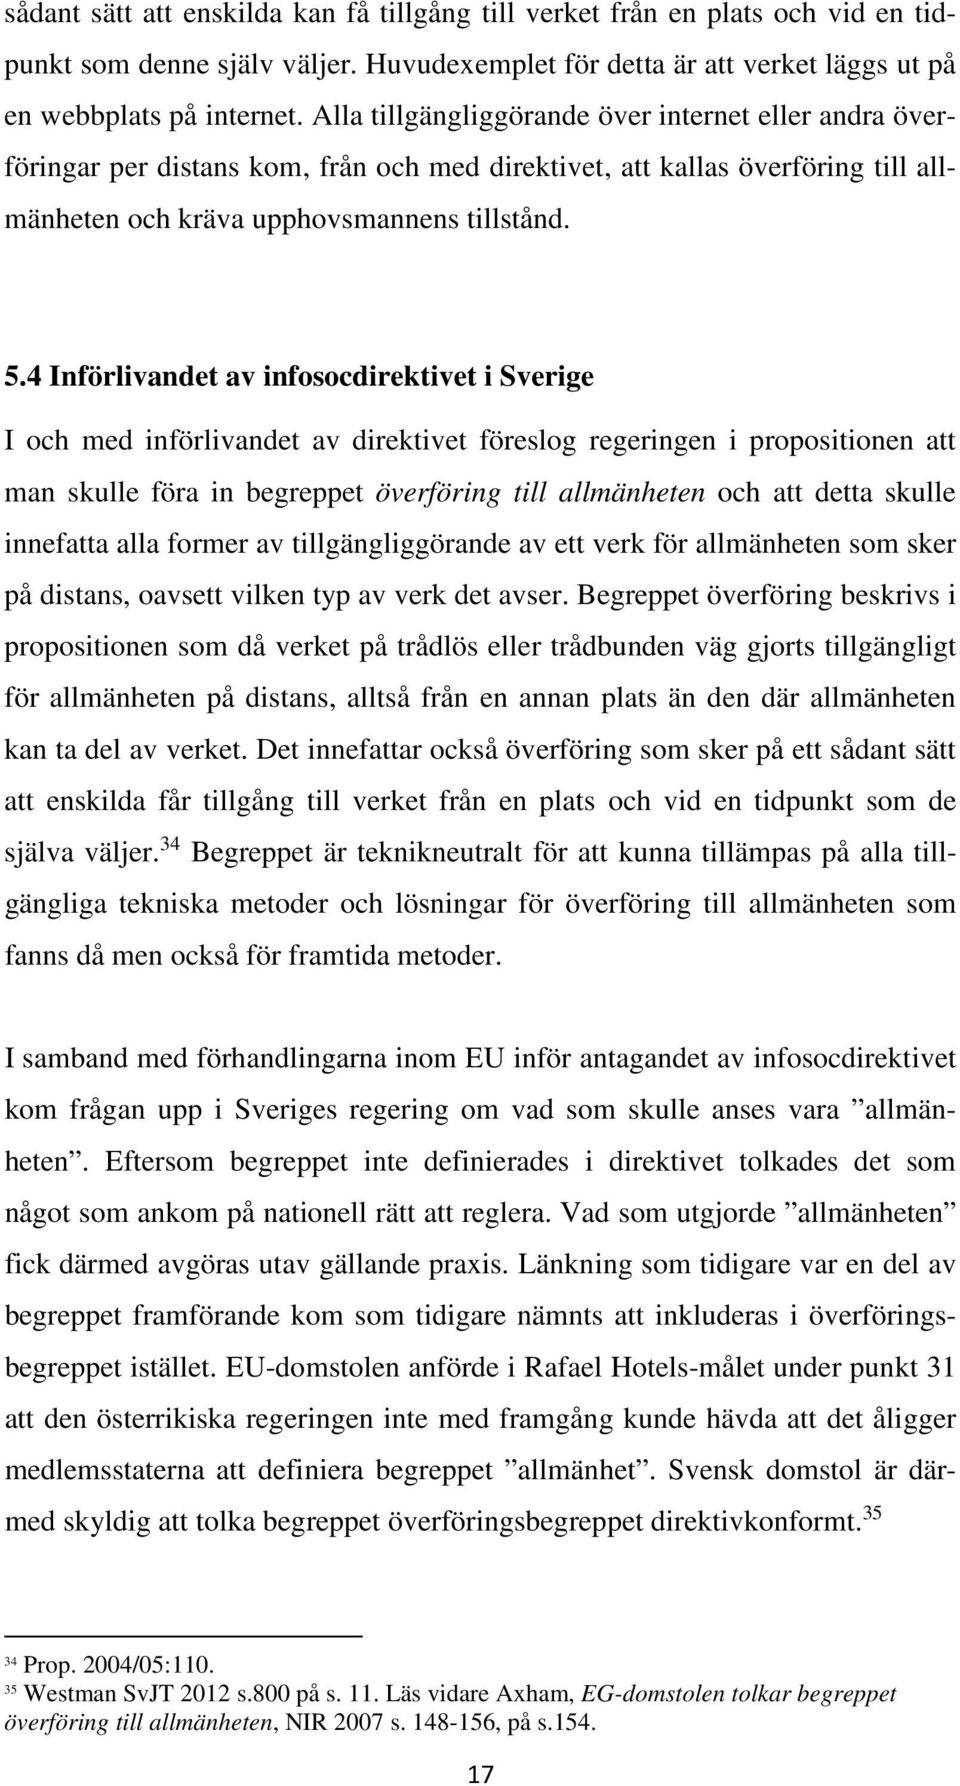 4 Införlivandet av infosocdirektivet i Sverige I och med införlivandet av direktivet föreslog regeringen i propositionen att man skulle föra in begreppet överföring till allmänheten och att detta